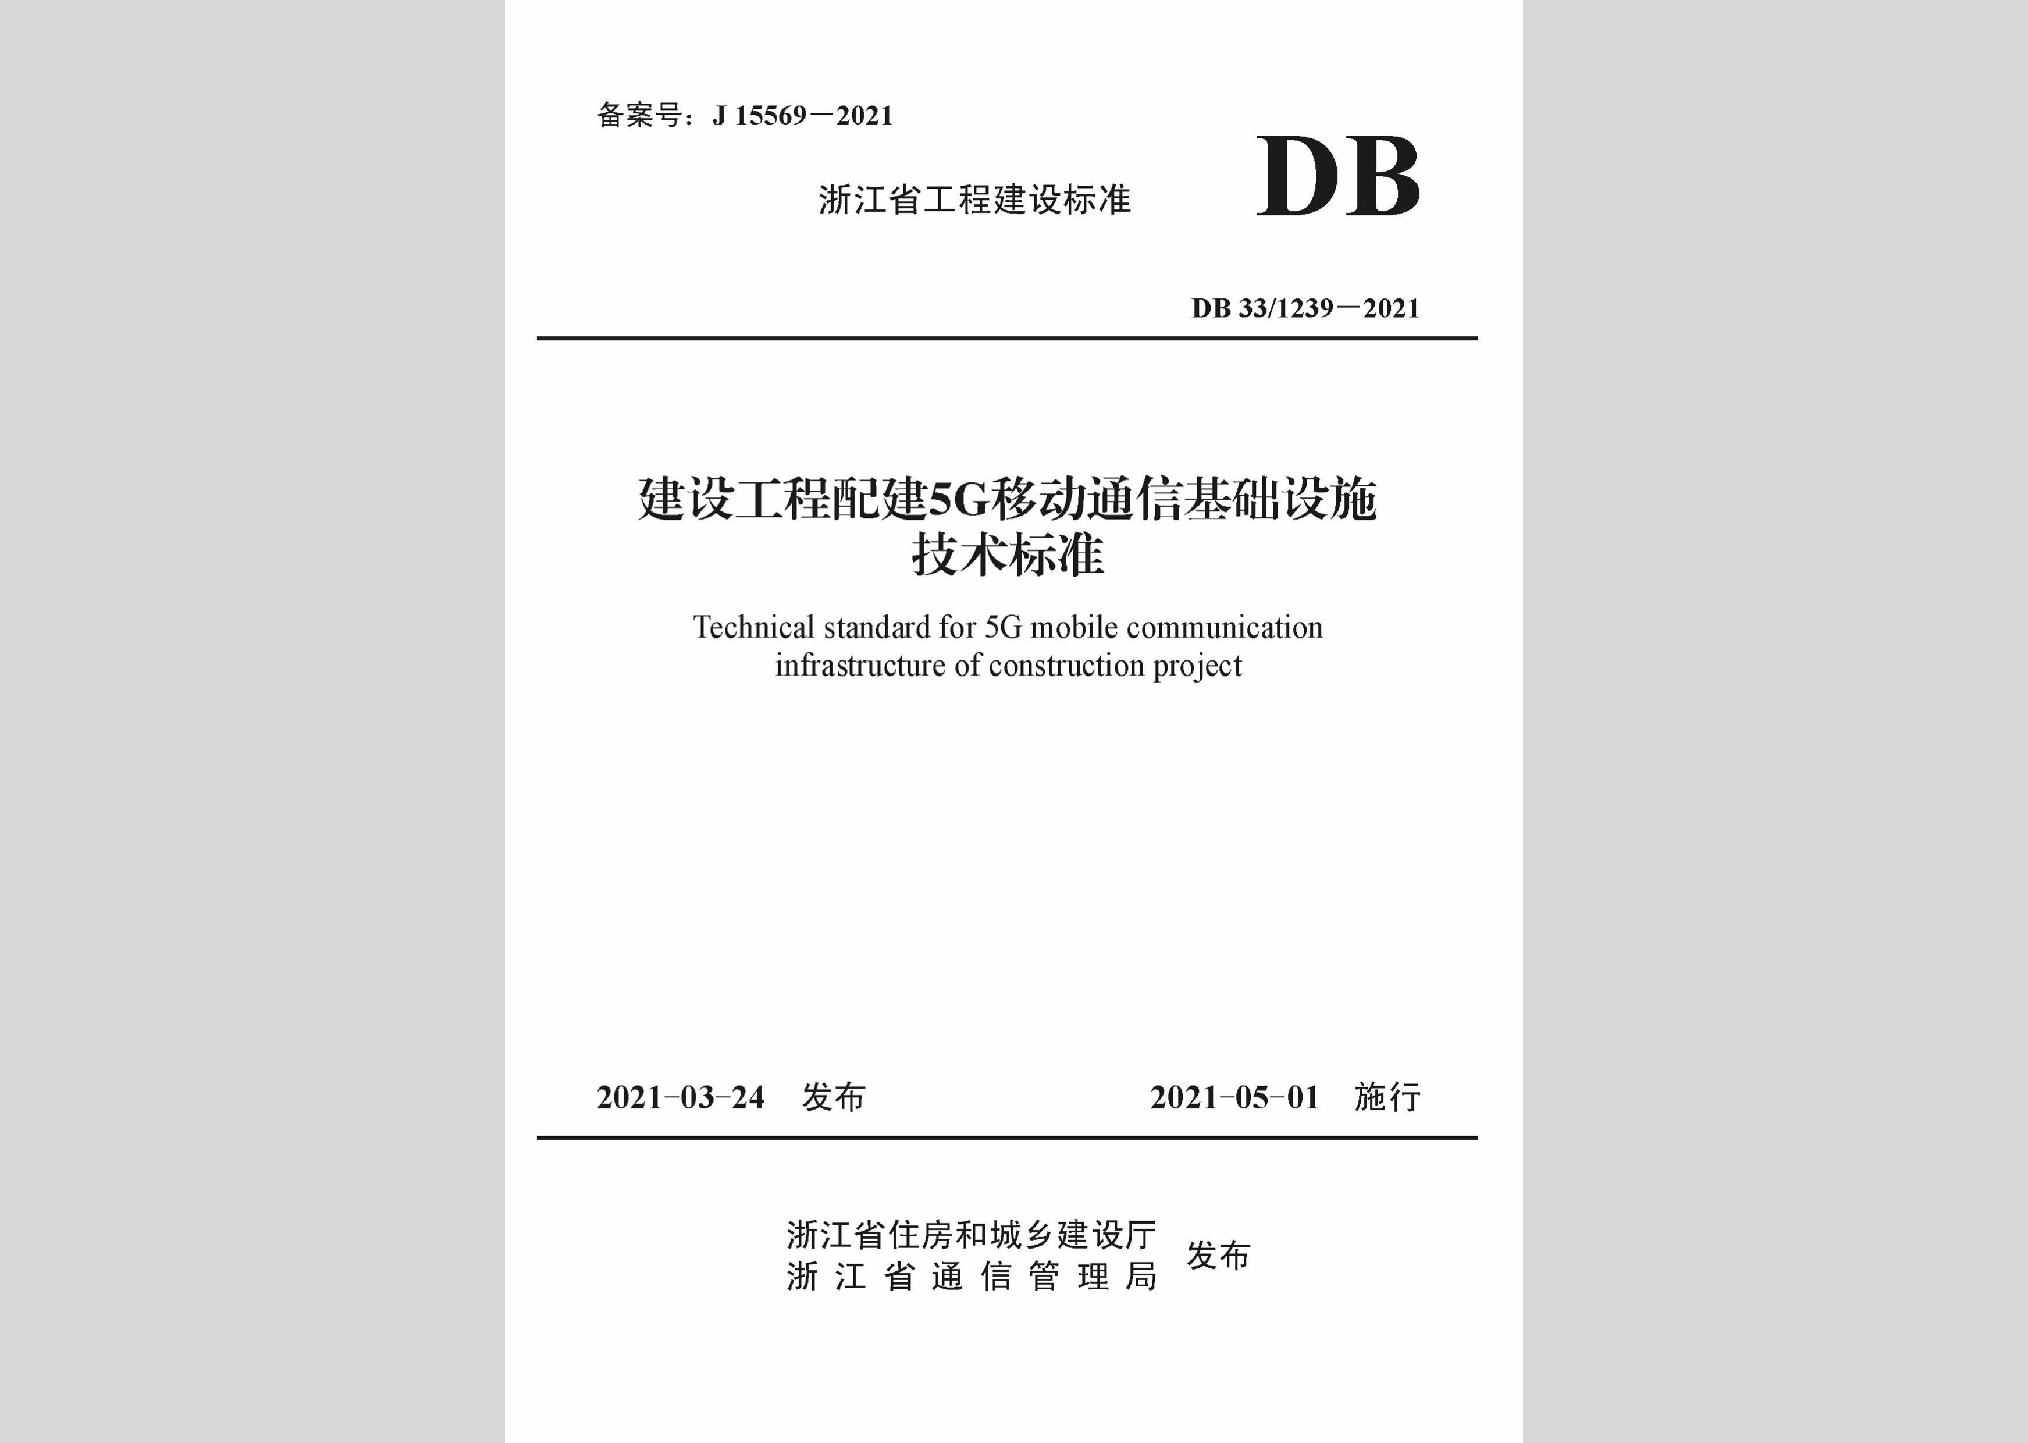 DB33/1239-2021：建设工程配建5G移动通信基础设施技术标准